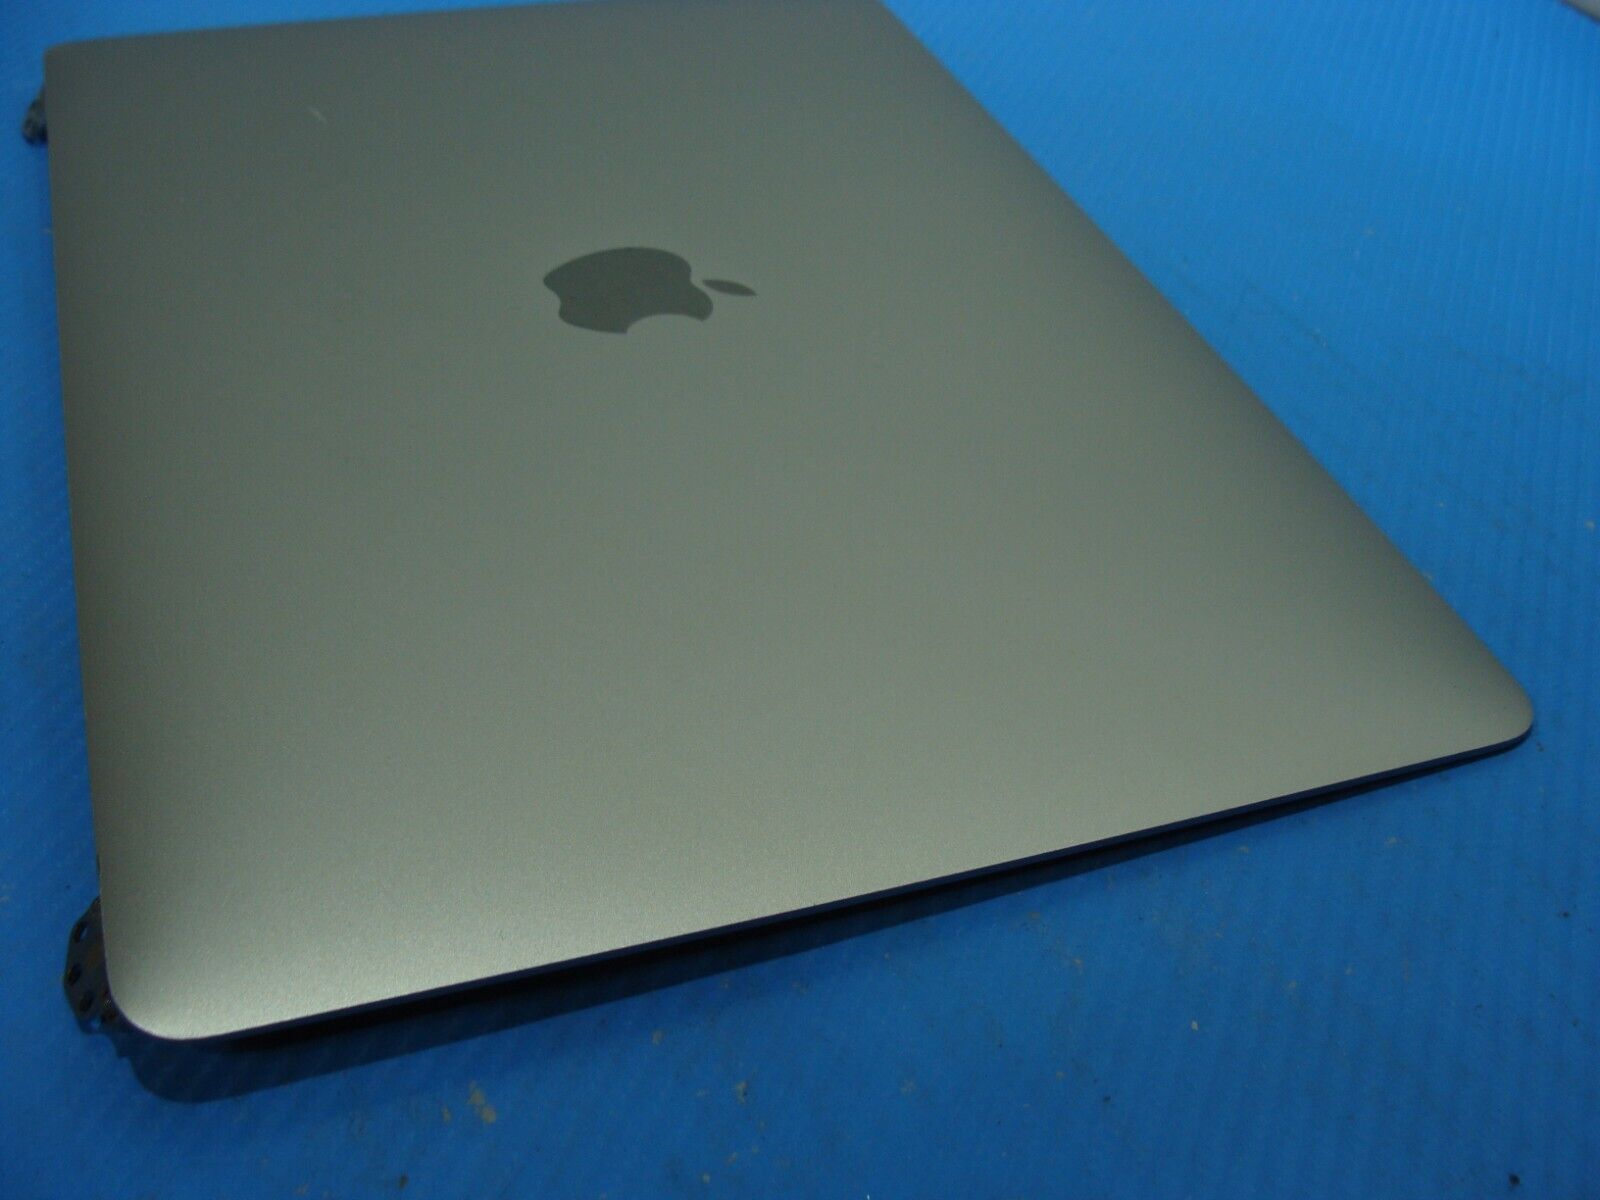 MacBook Pro 13